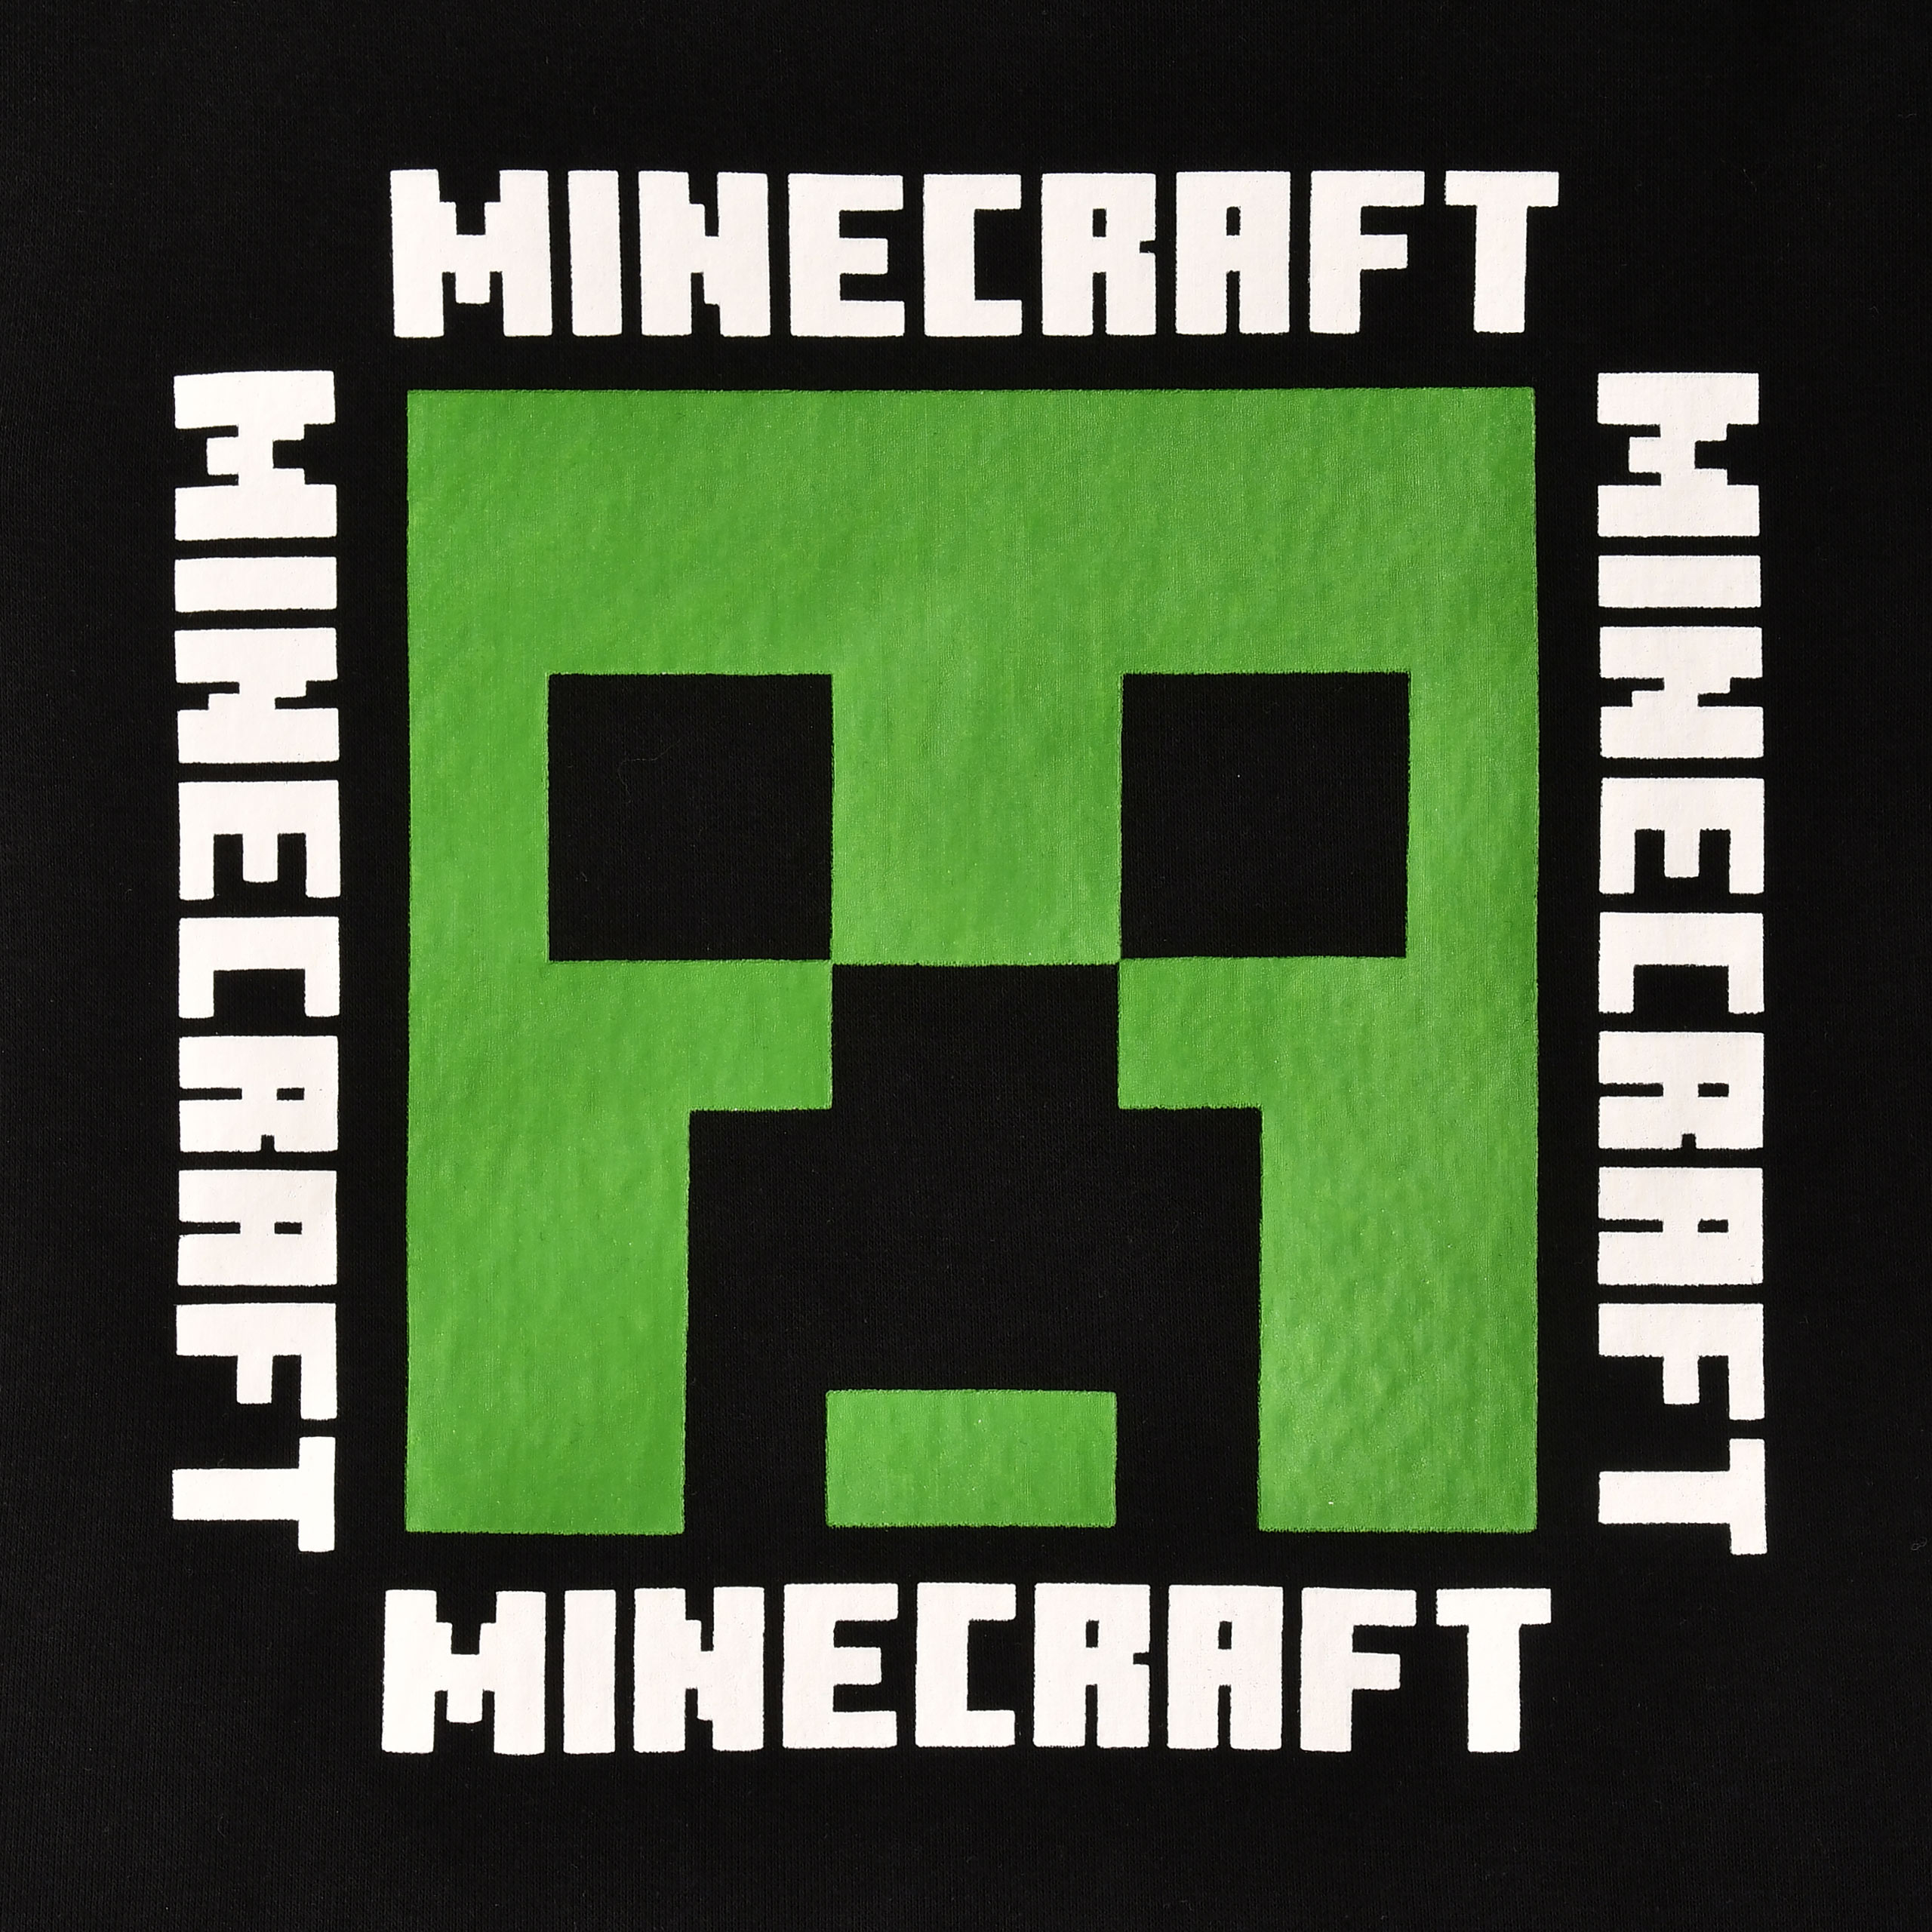 Minecraft - Creeper Sweater Kinder schwarz